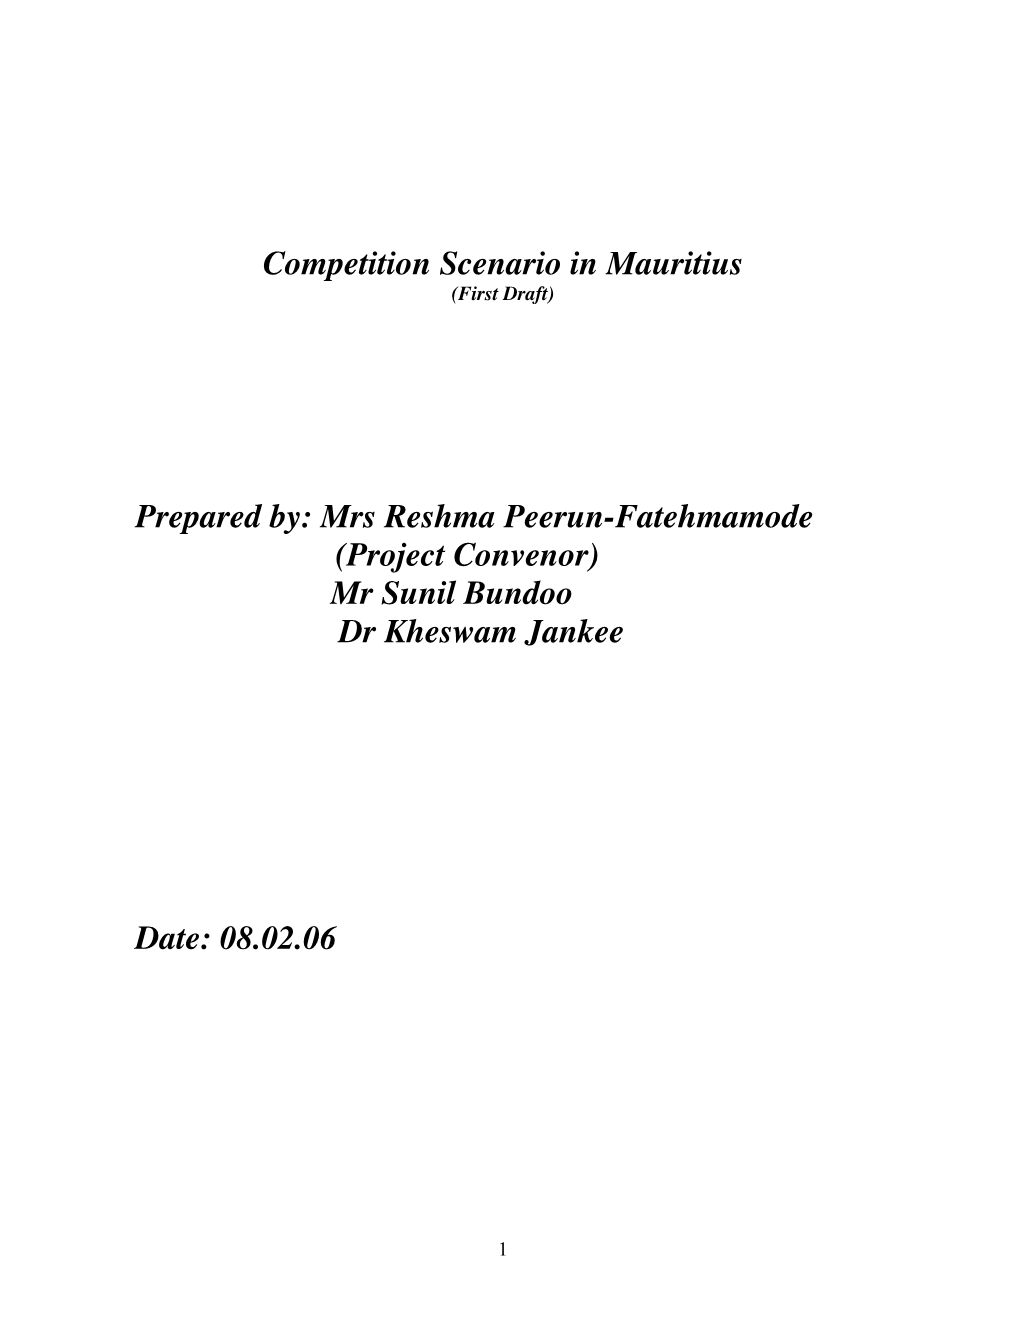 Competition Scenario in Mauritius Prepared By: Mrs Reshma Peerun